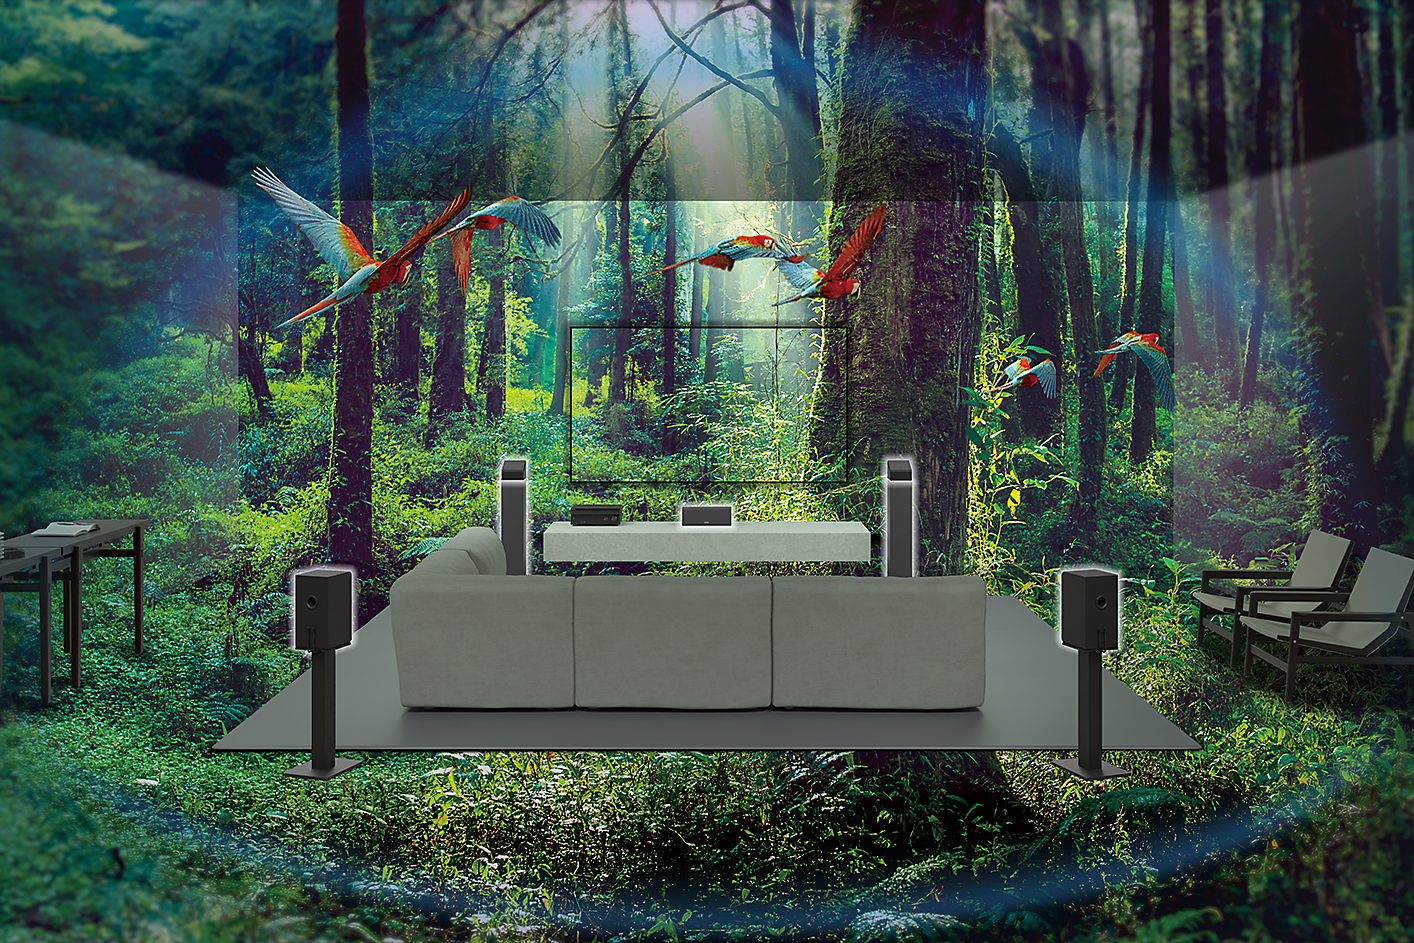 Εικόνα καναπέ, τηλεόρασης και ηχείων στη μέση ενός δάσους με παπαγάλους να πετούν γύρω γύρω